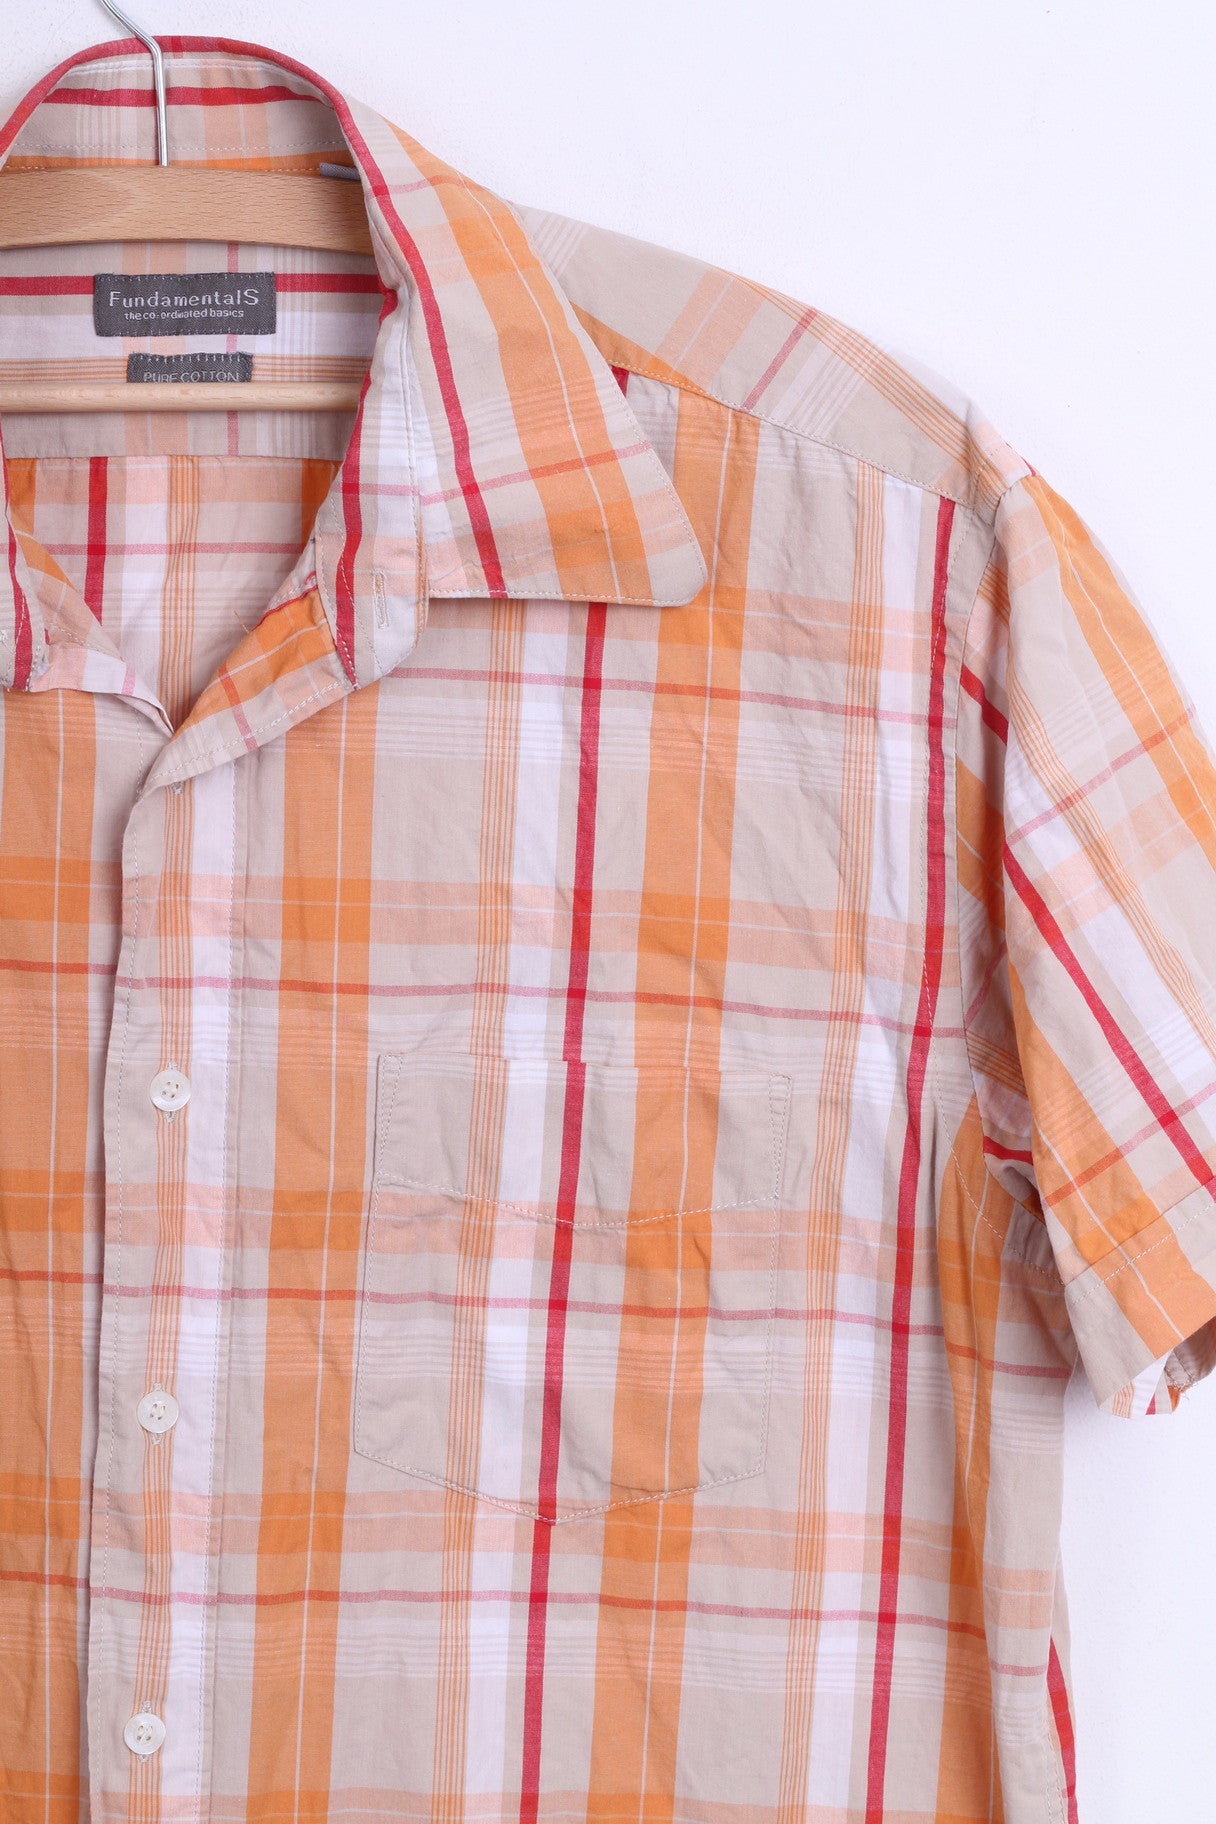 Fundamentals Mens L Casual Shirt Check Orange Pure Cotton Top - RetrospectClothes